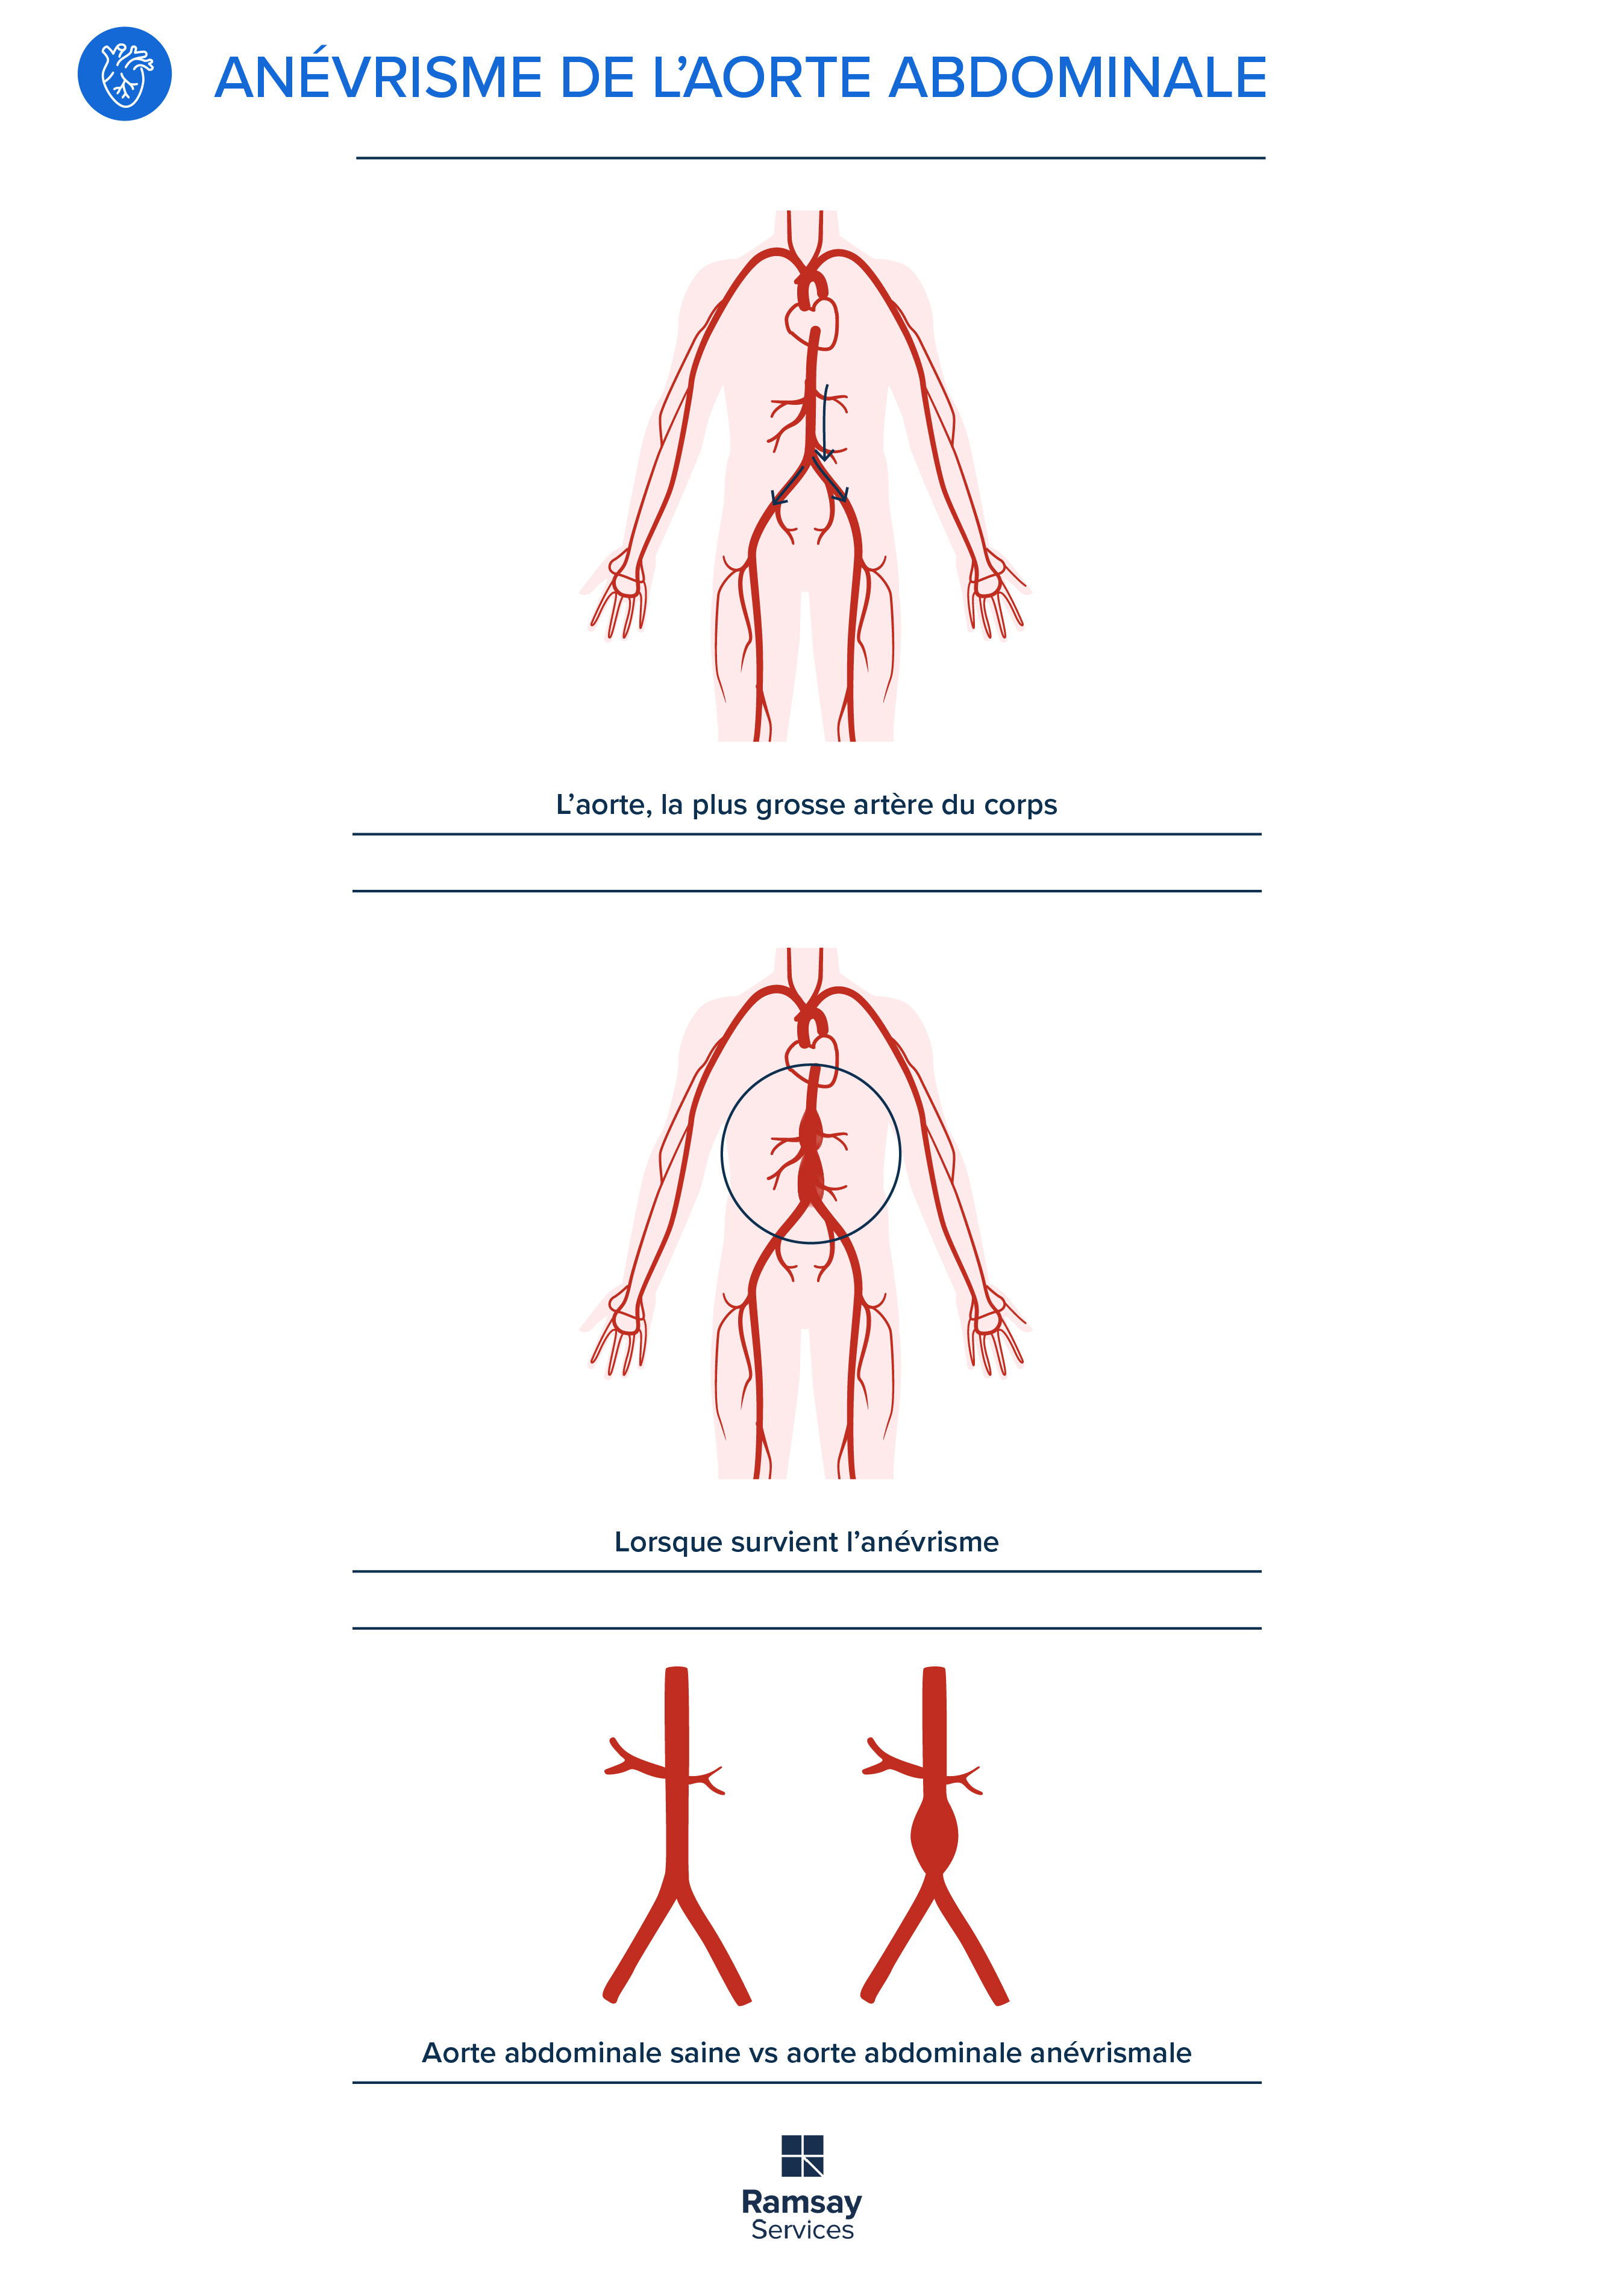 Anévrisme de l’aorte abdominale : focus sur la chirurgie vasculaire ou endovasculaire